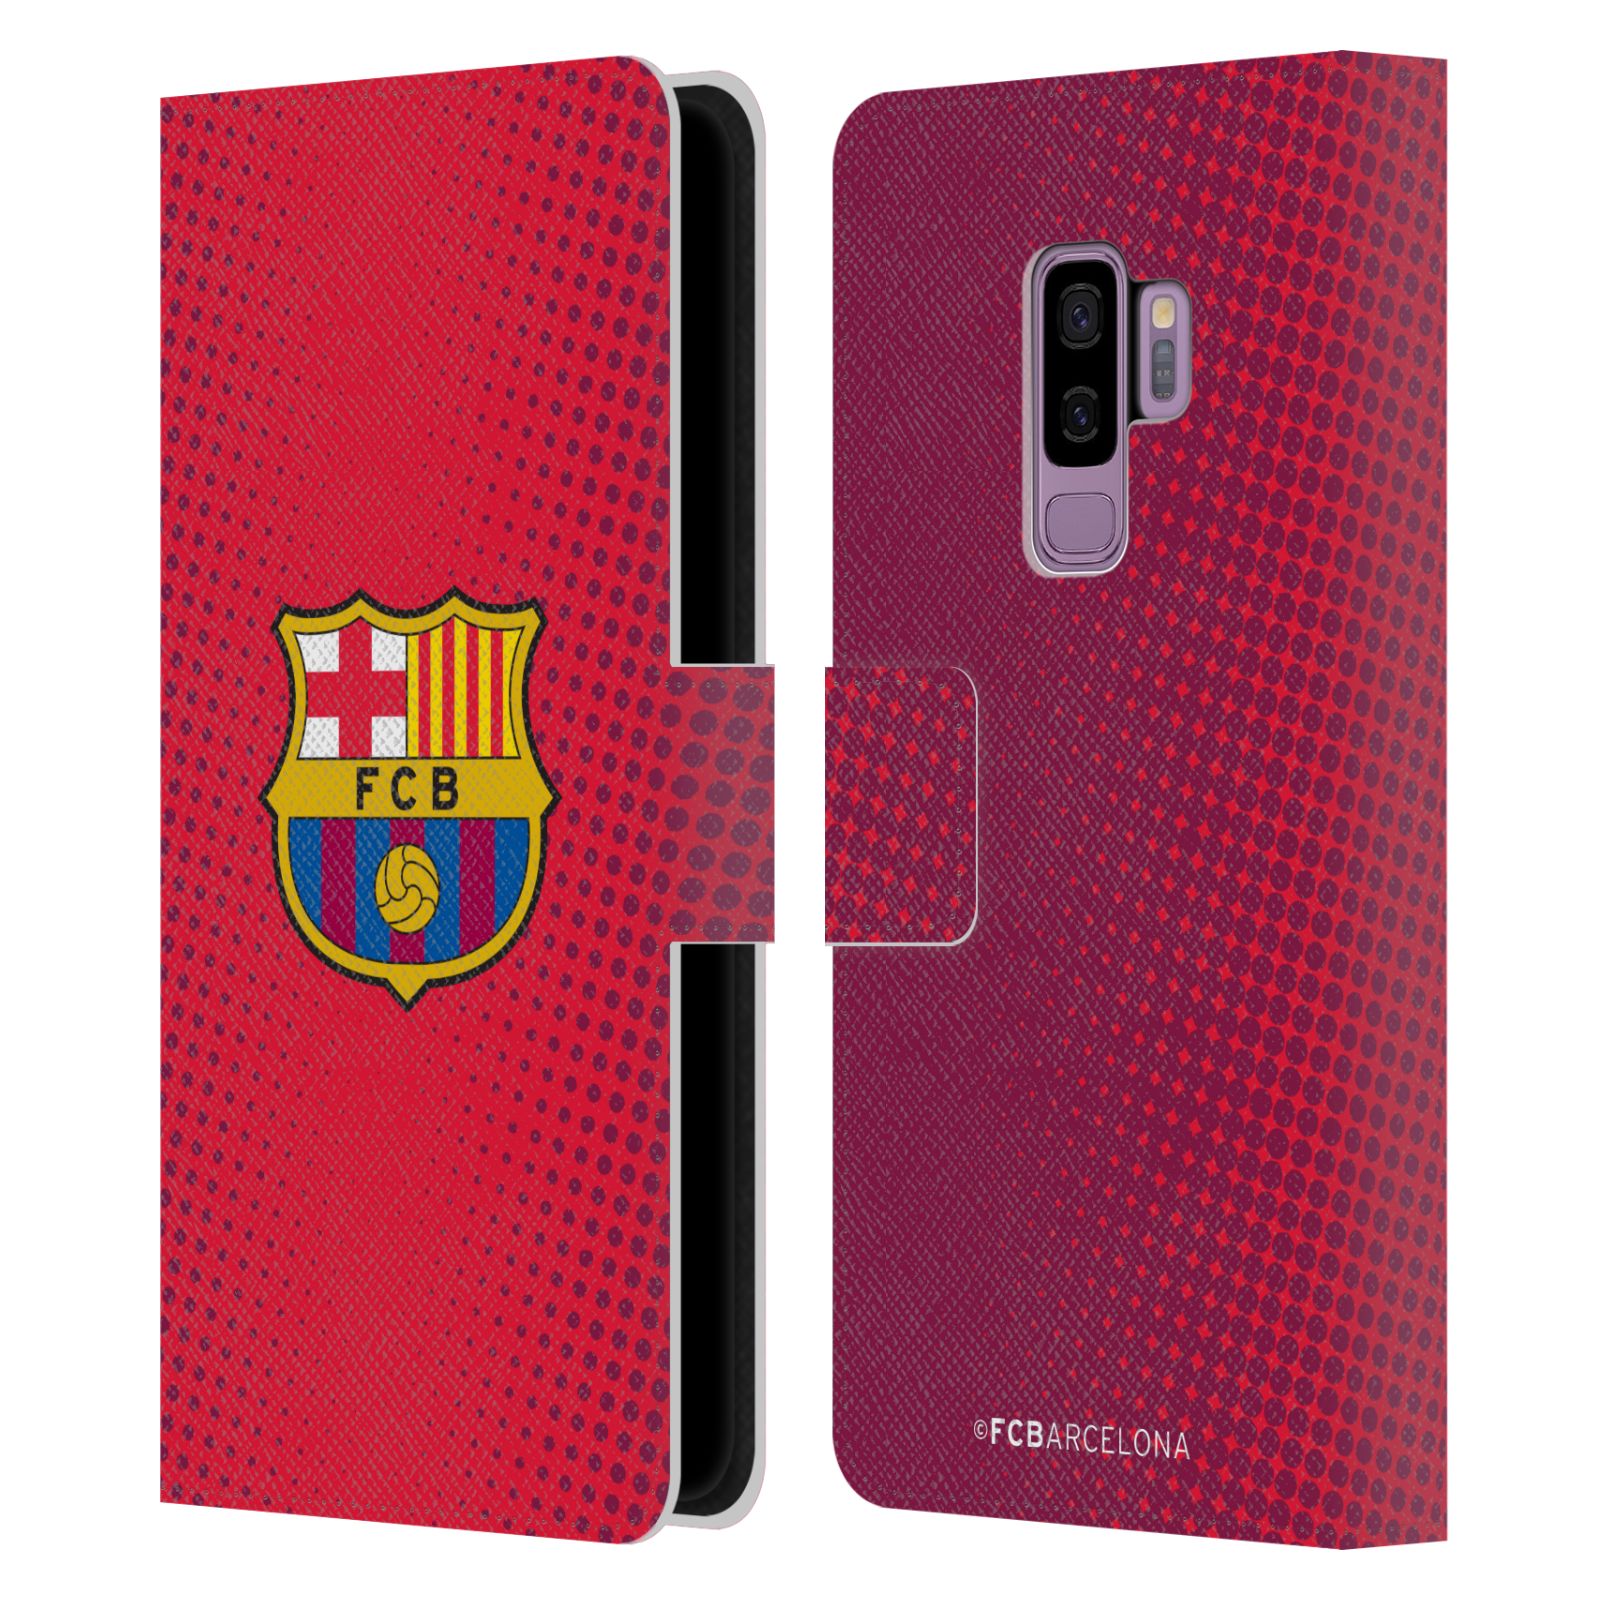 Pouzdro na mobil Samsung Galaxy S9+ / S9 PLUS - HEAD CASE - FC Barcelona - Tečky červená